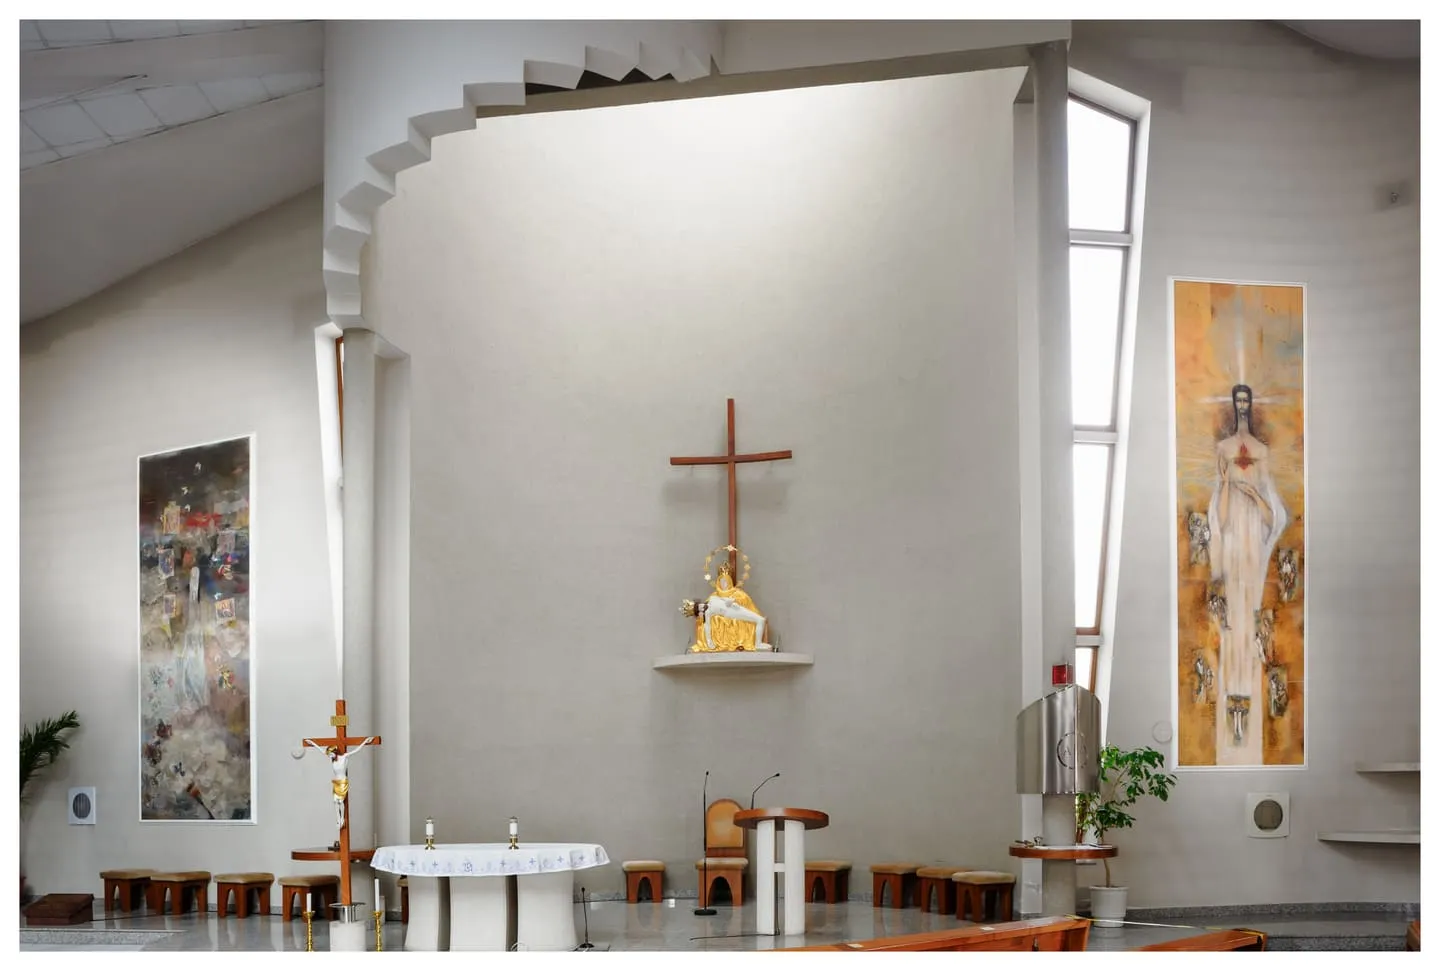 Pohľad do interiéru kostola Sedem - bolestnej Panny Márie v Bratislave, na pravej strane - Kristus, sedem sviatostí